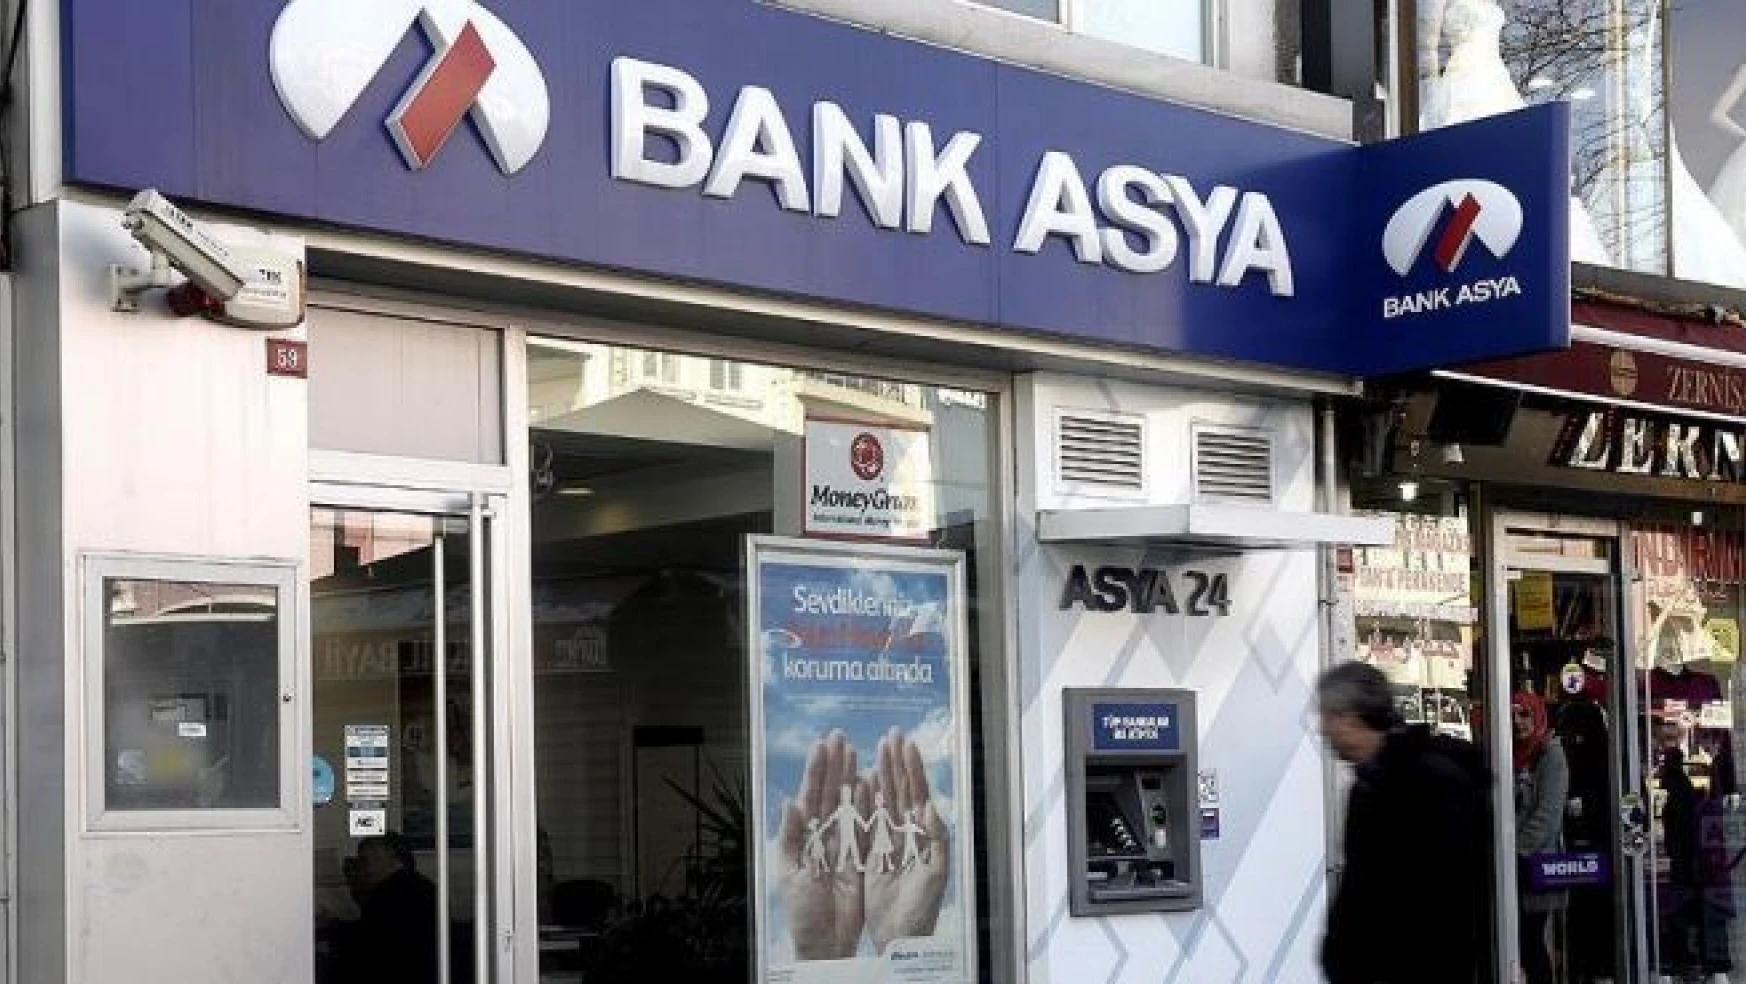 'Bank Asya'daki zarar TMSF öncesi kredilerden kaynaklandı'